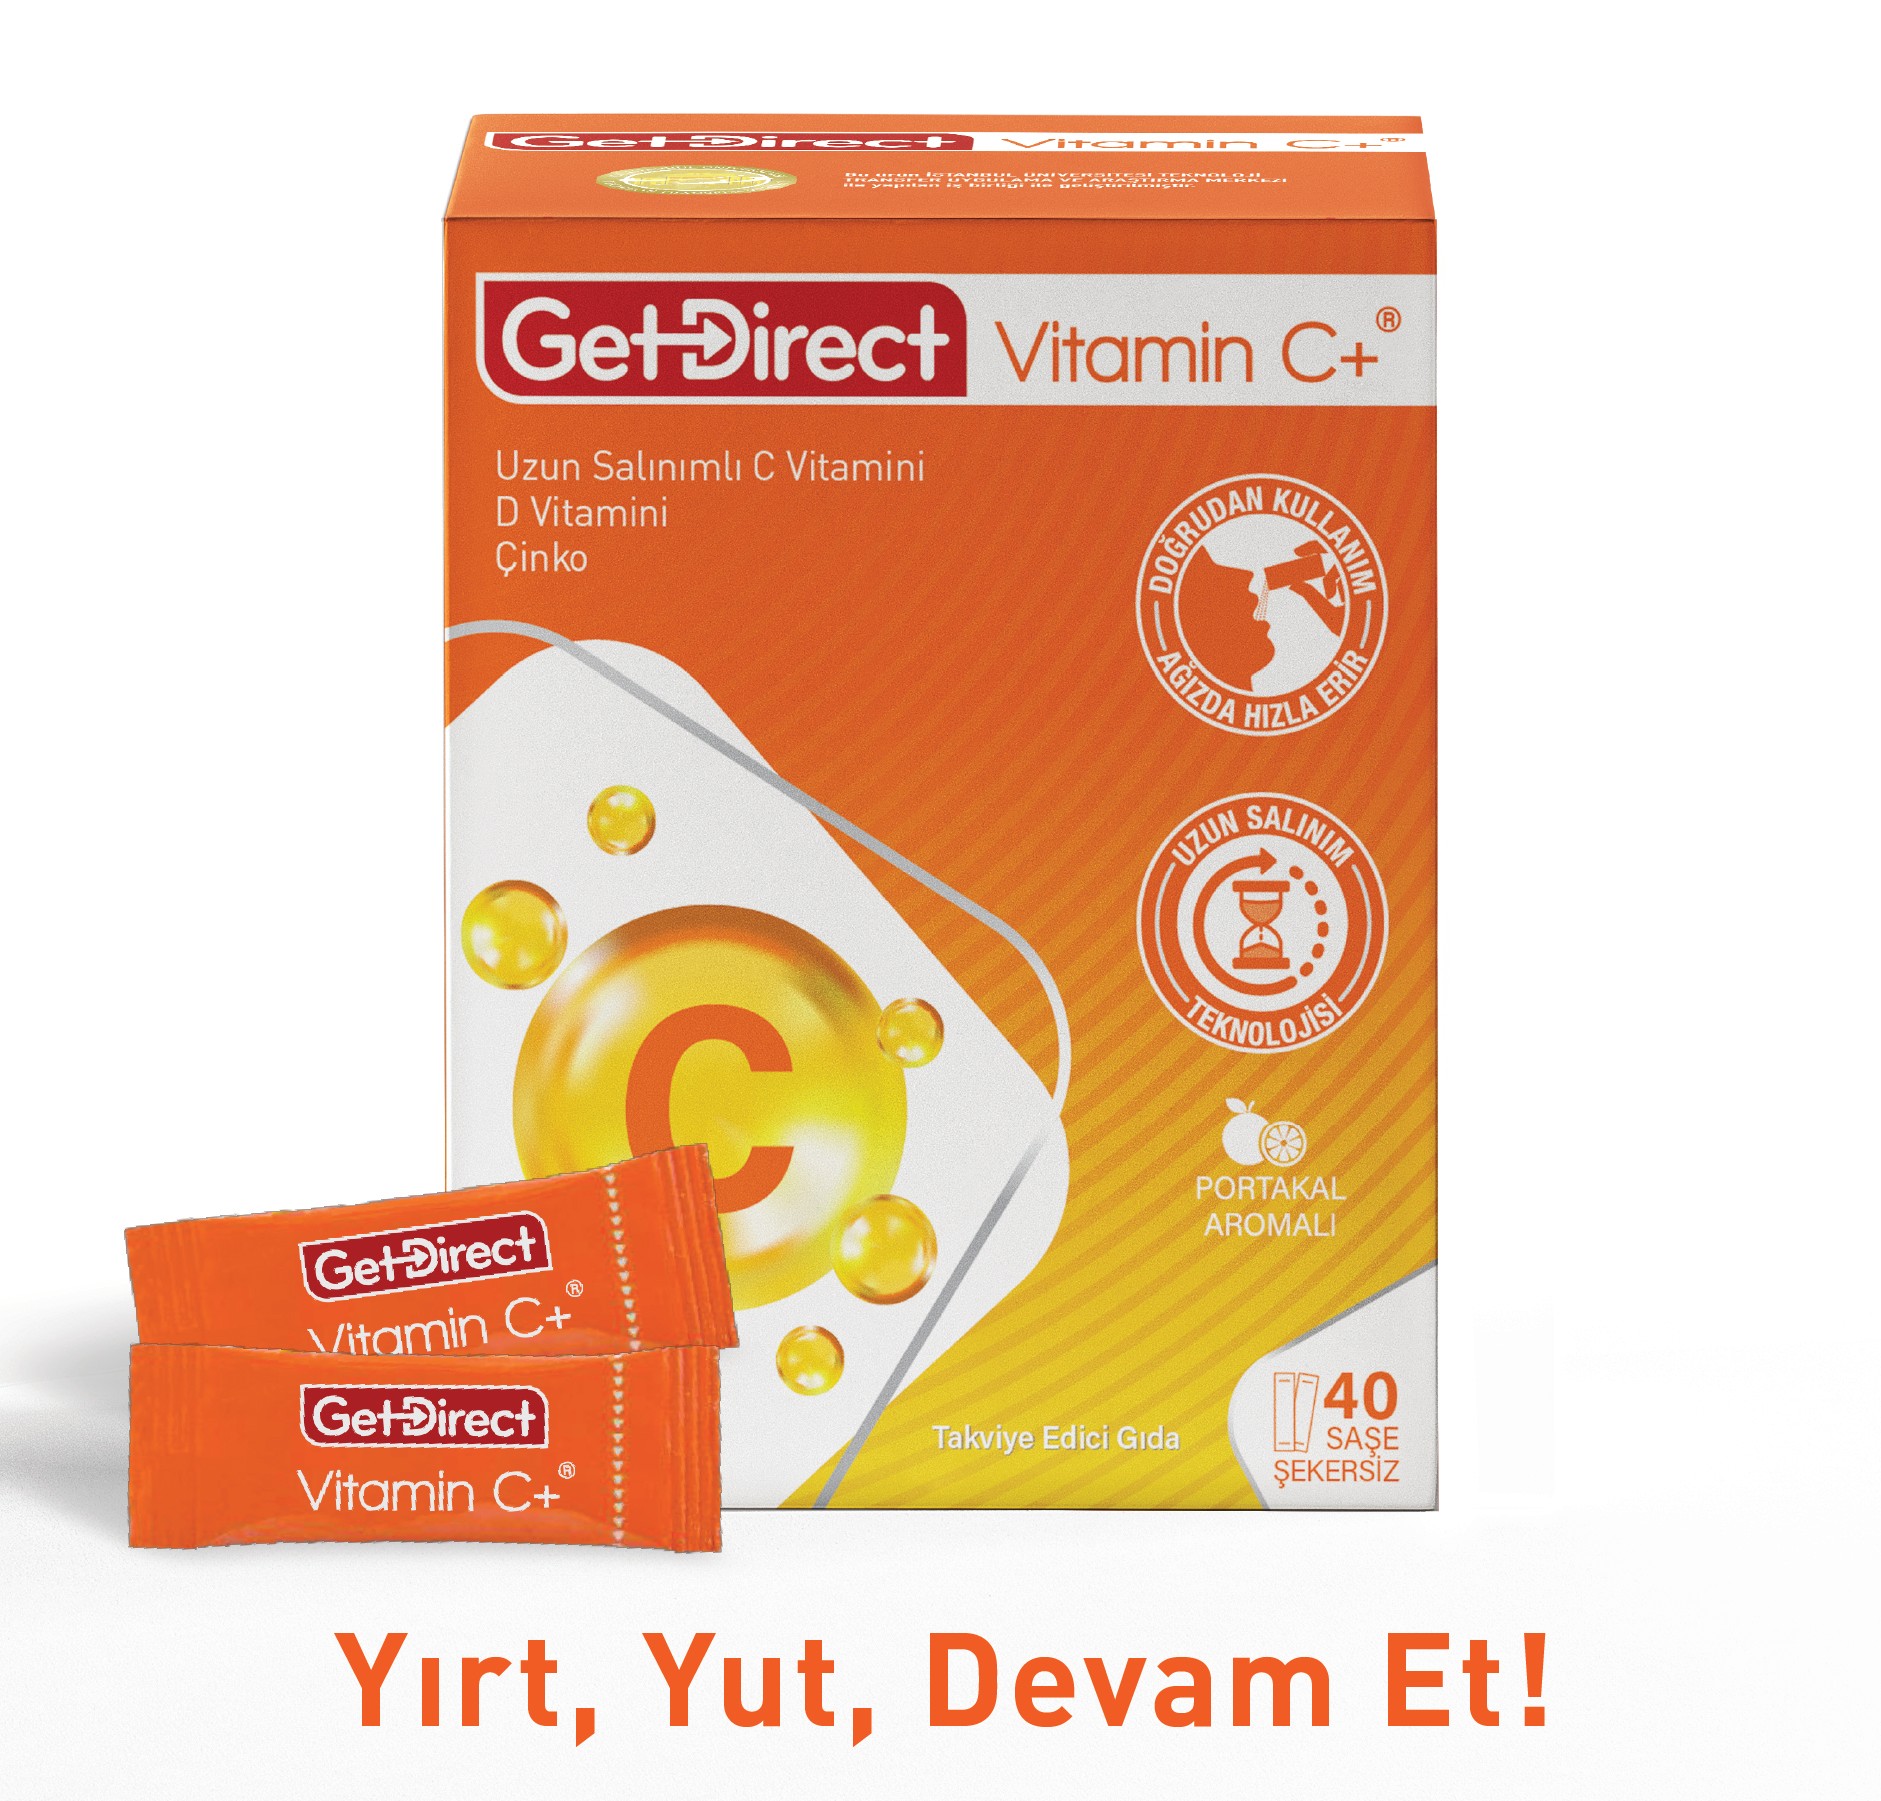 GetDirect Vitamin C+ Uzun Salınımlı C Vitamini, D Vitamini ve Çinko İçeren Takviye Edici Gıda